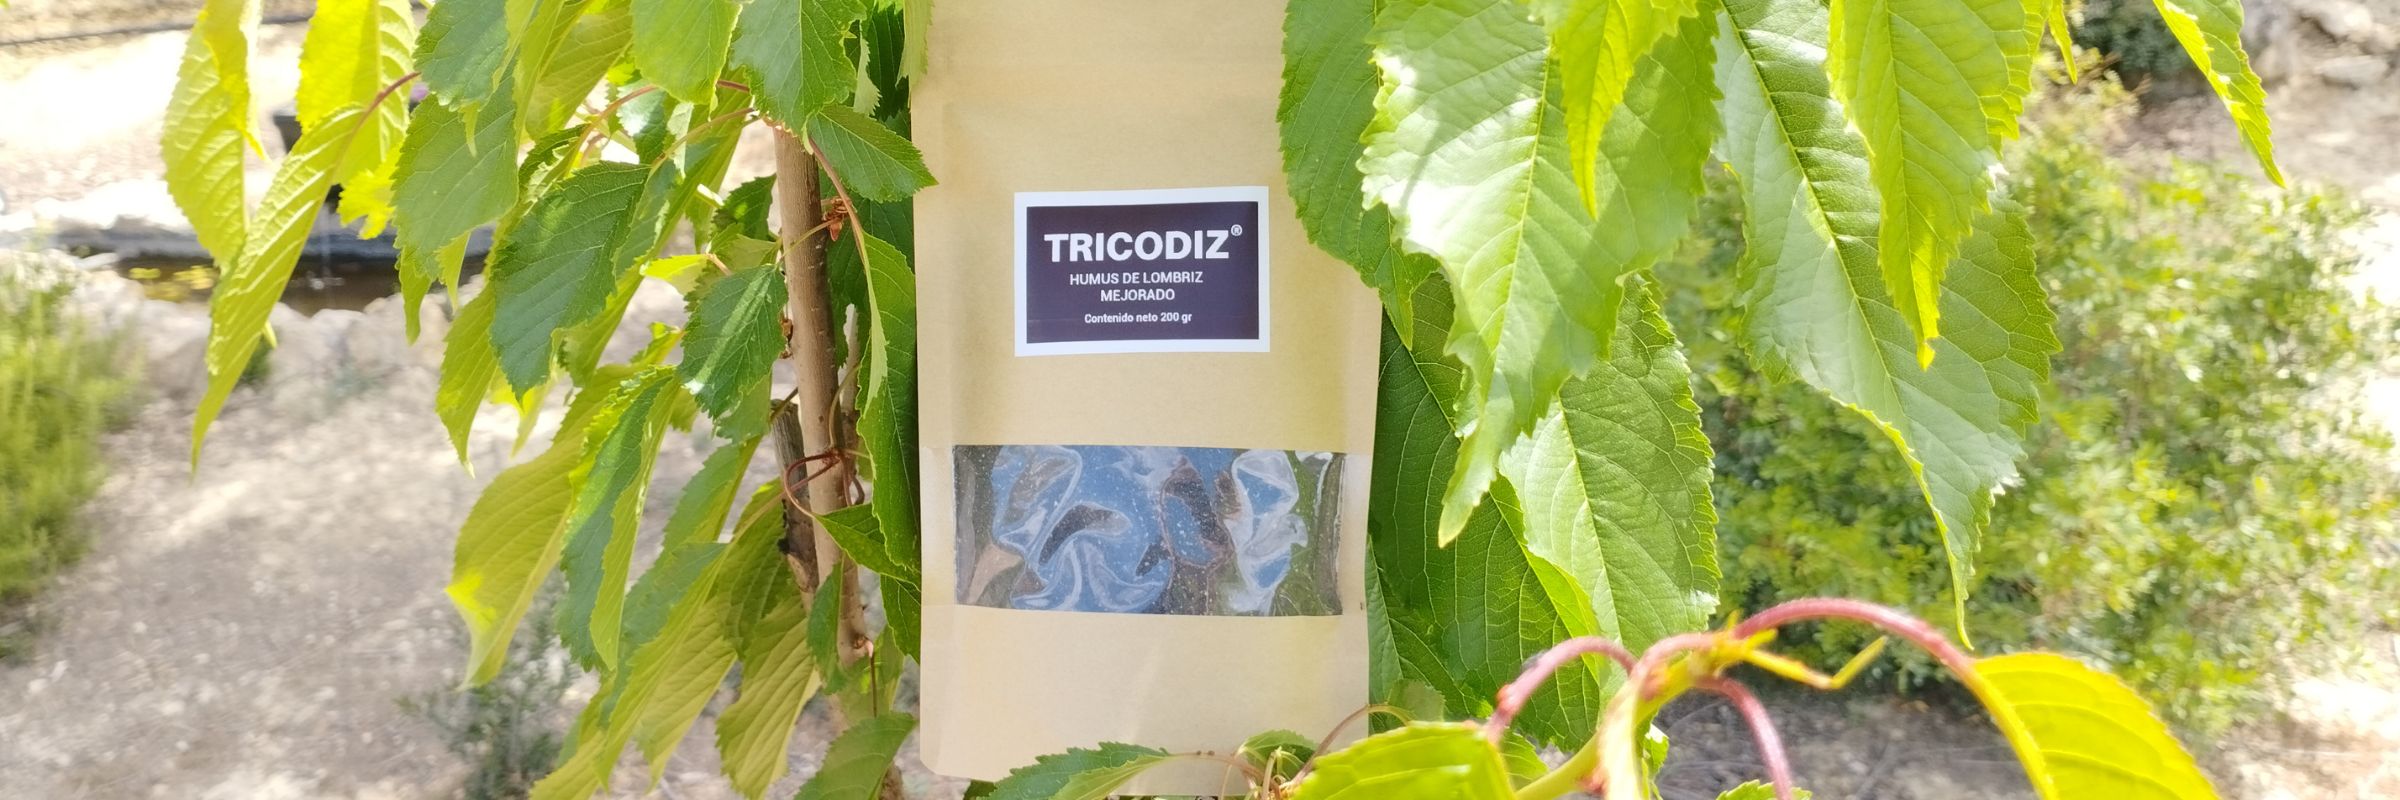 abono-ecologico-tricodiz- 2